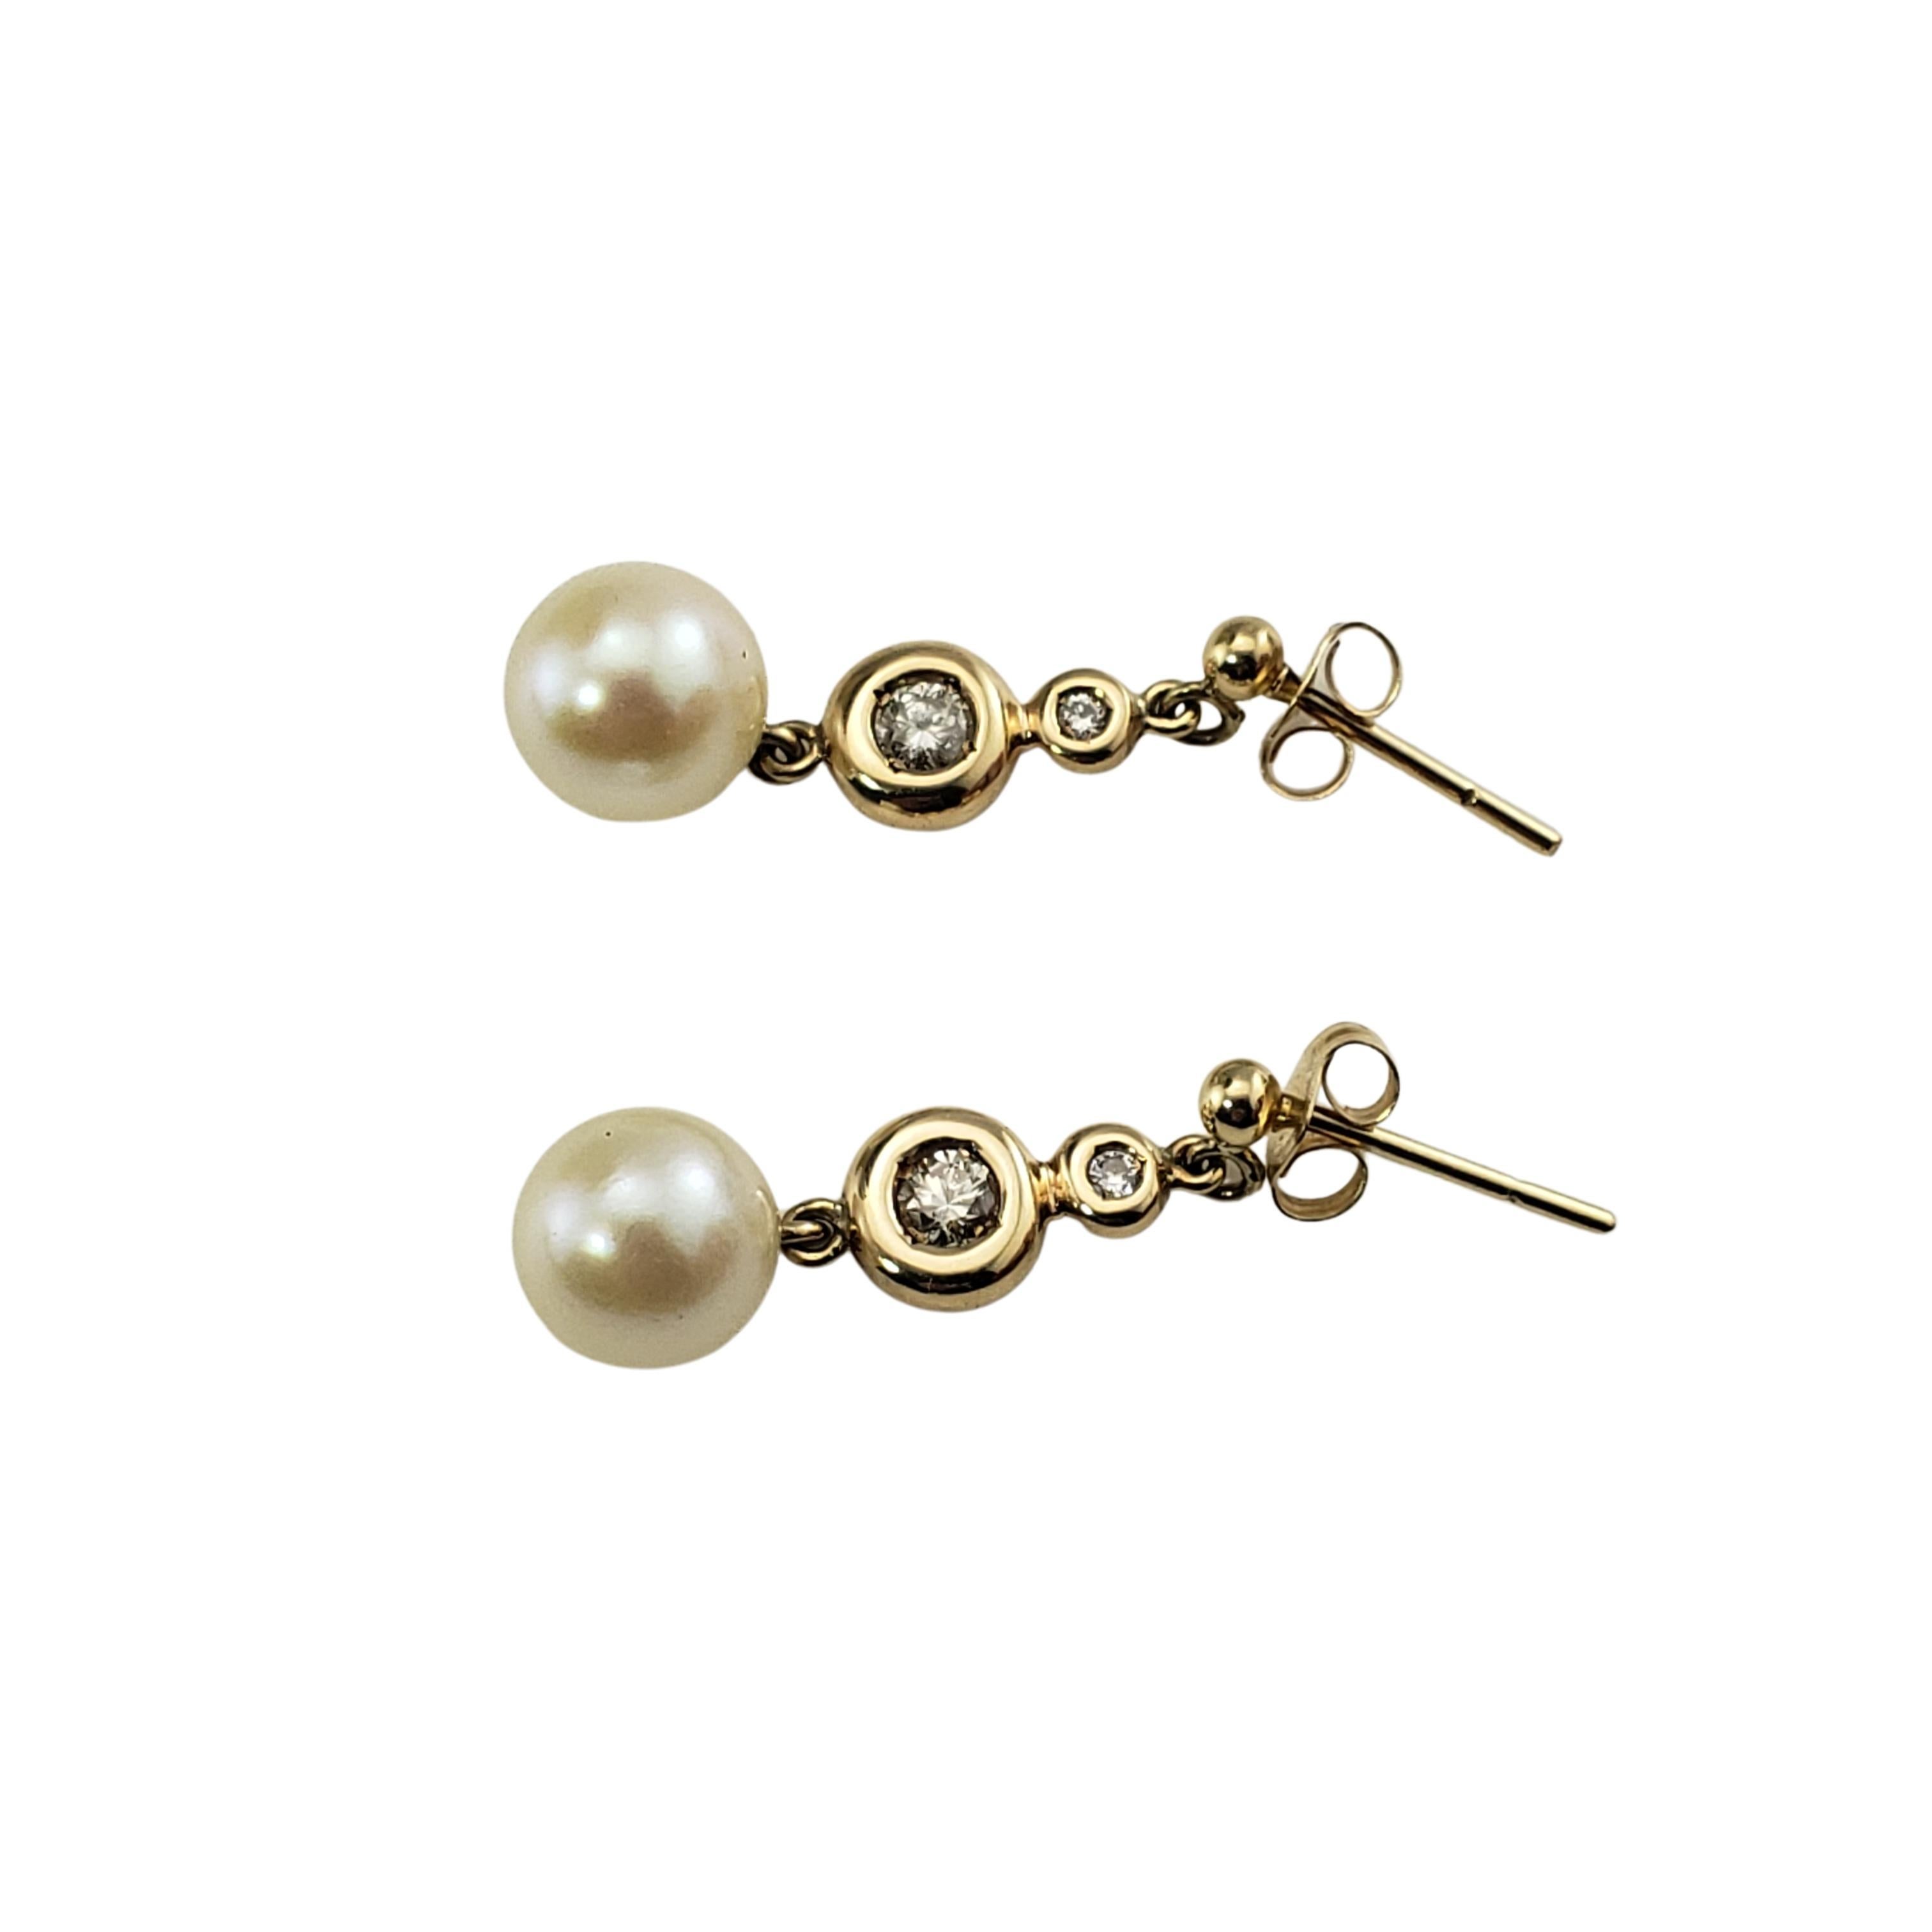 Pendants d'oreilles en or jaune 9 carats, perles et diamants -

Ces ravissantes boucles d'oreilles comportent chacune une perle ronde (8 mm) et deux diamants ronds de taille brillant sertis en or jaune 9 carats.  Fermetures à glissière au